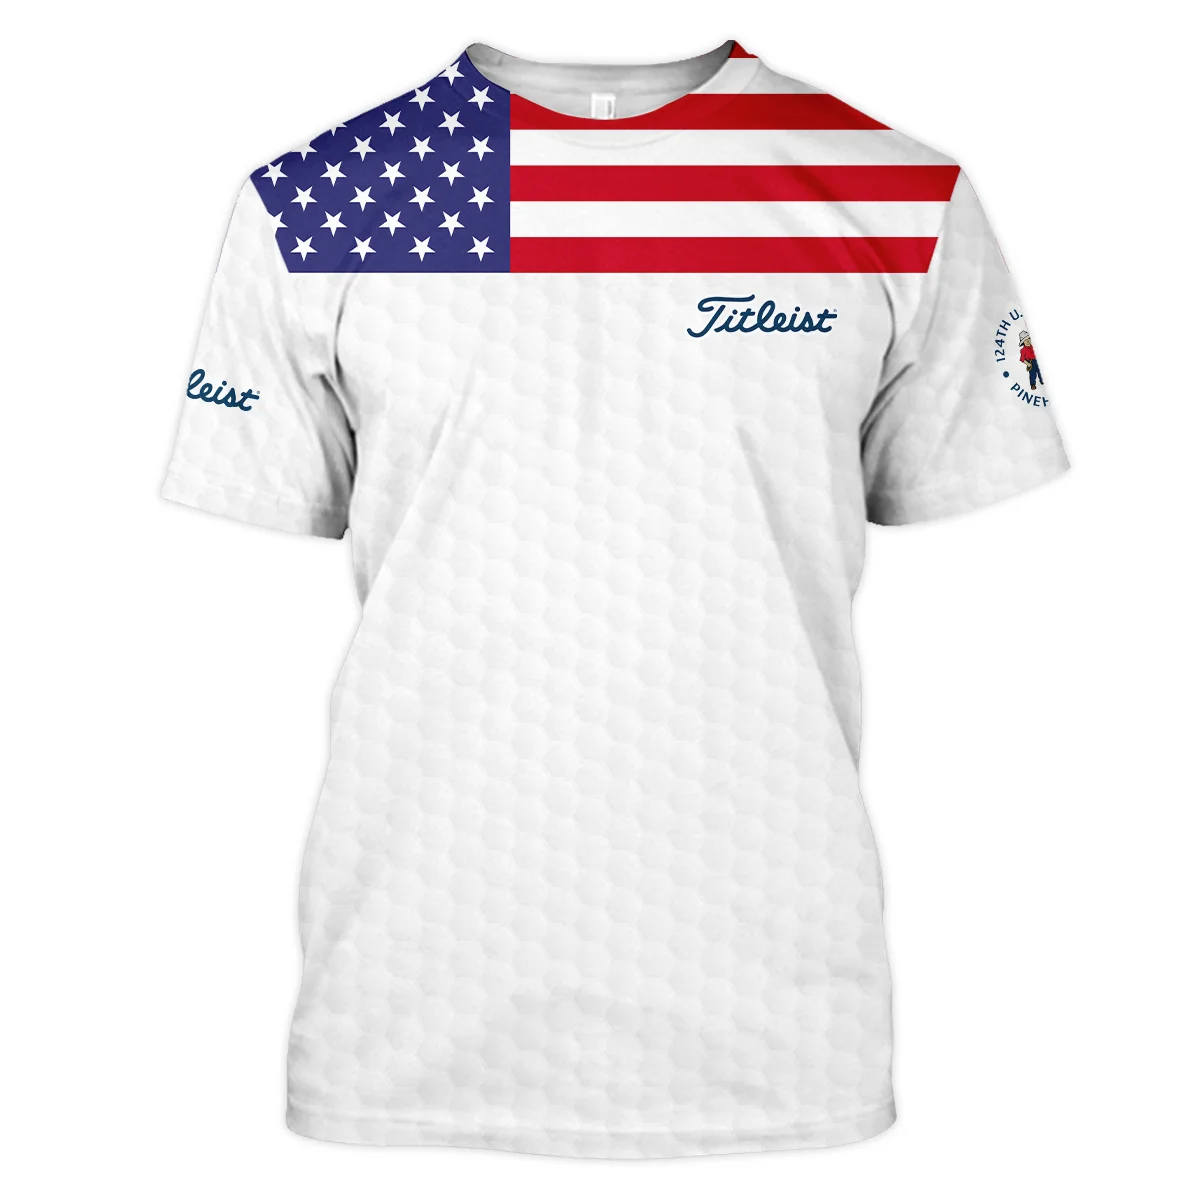 Titleist 124th U.S. Open Pinehurst Unisex T-Shirt USA Flag Golf Pattern All Over Print T-Shirt